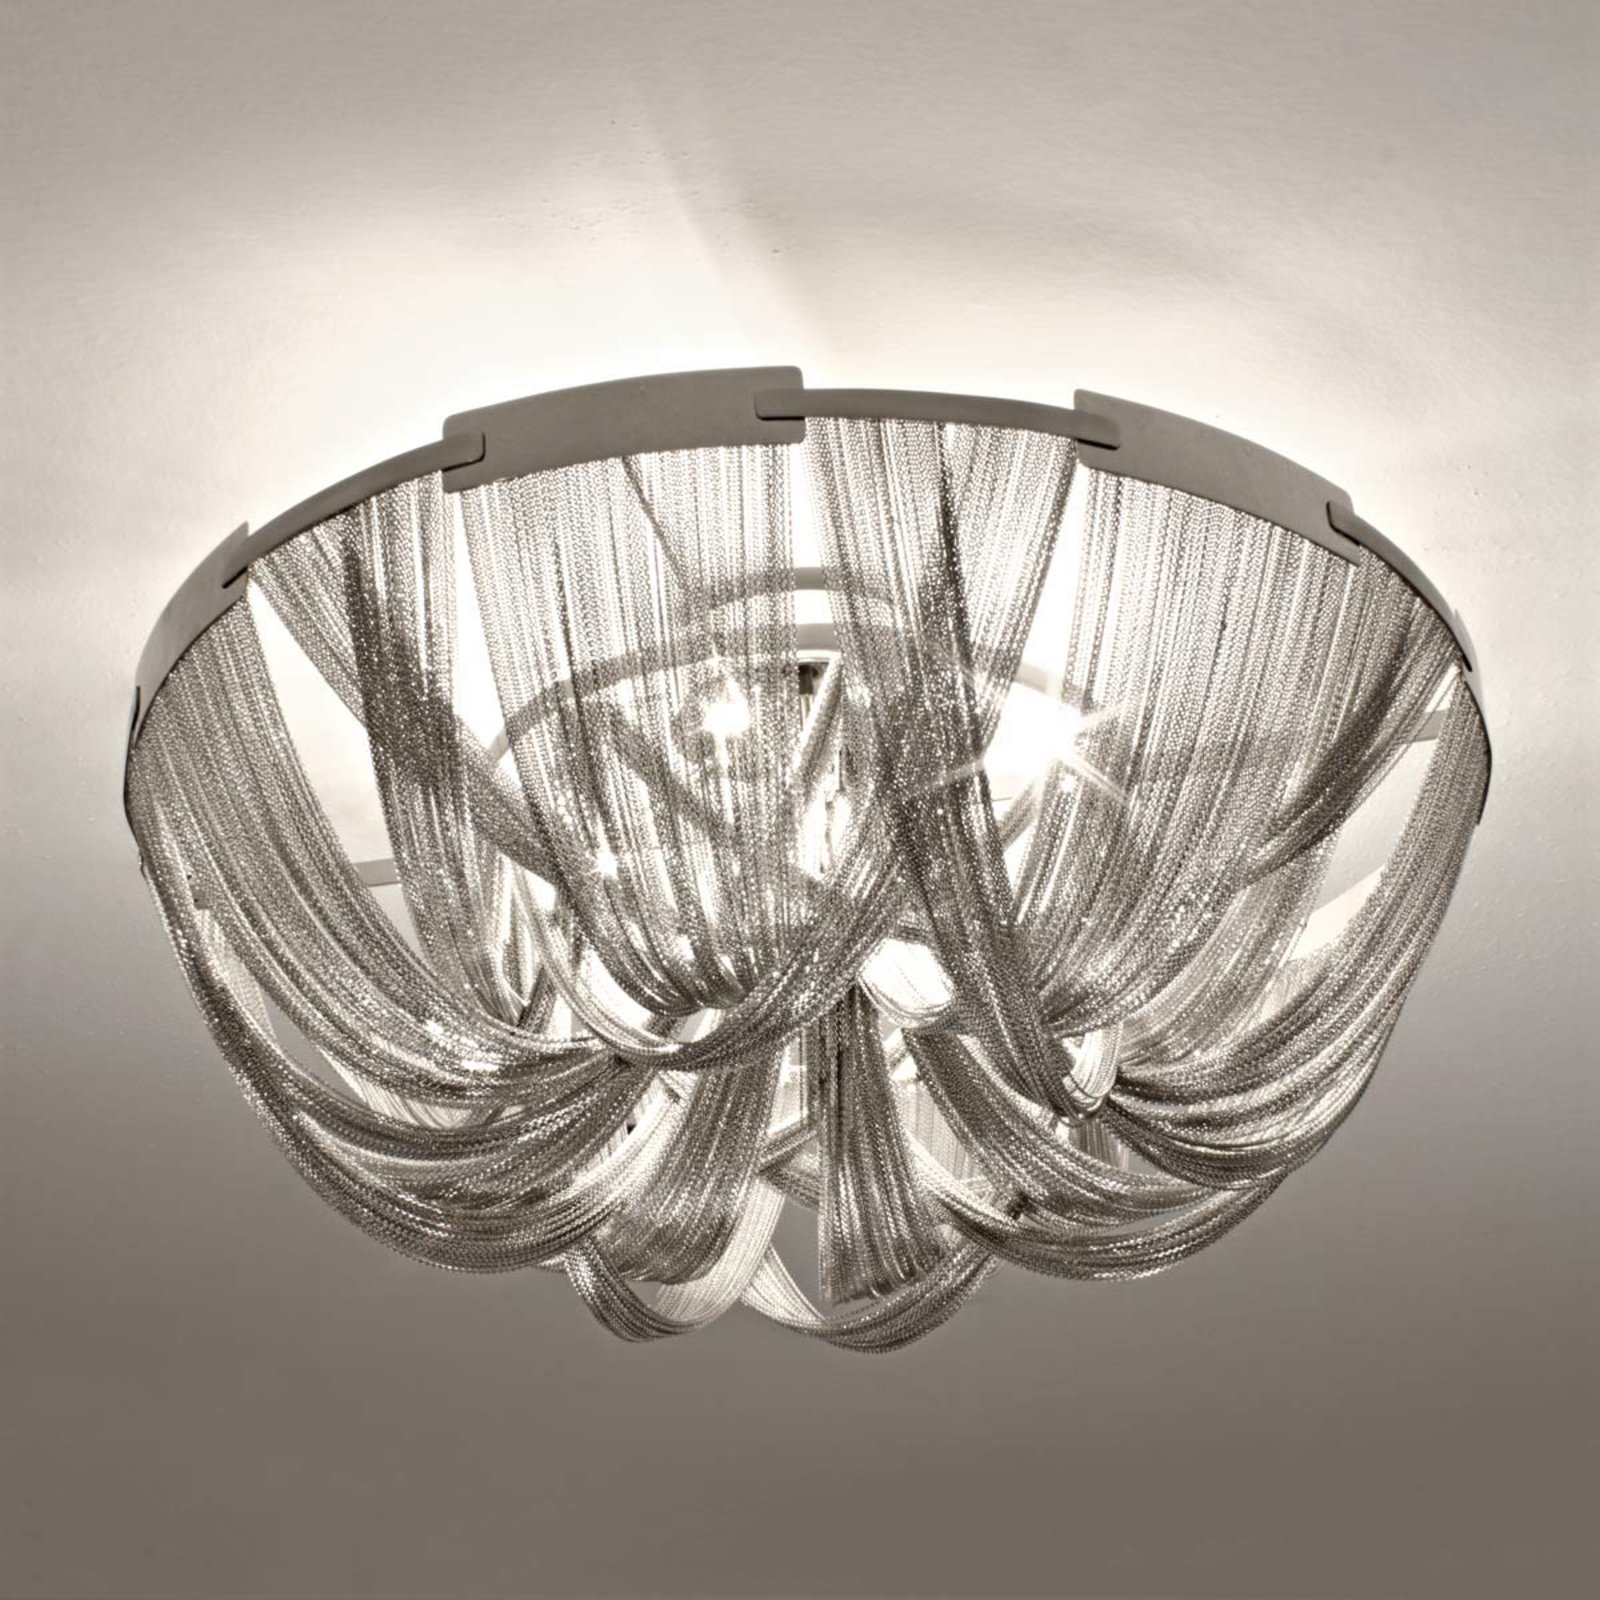 Opulent Soscik designer ceiling light, 72 cm